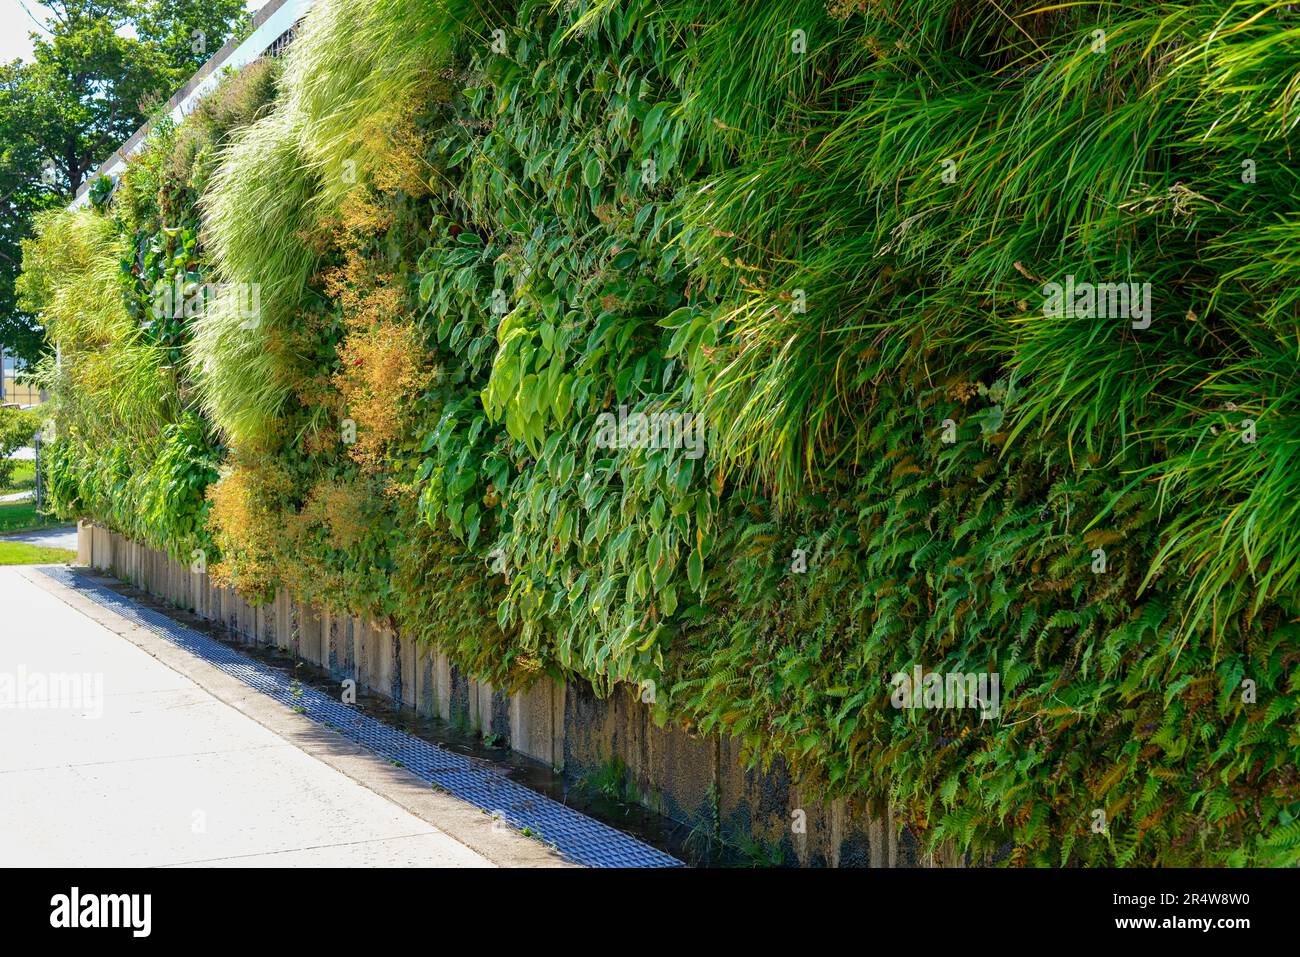 Mur vivant extérieur dans un climat froid sur un mur vertical d'un bâtiment. La structure haute est couverte de verdure grimpante, de plantes, de fougères et de flore. Banque D'Images